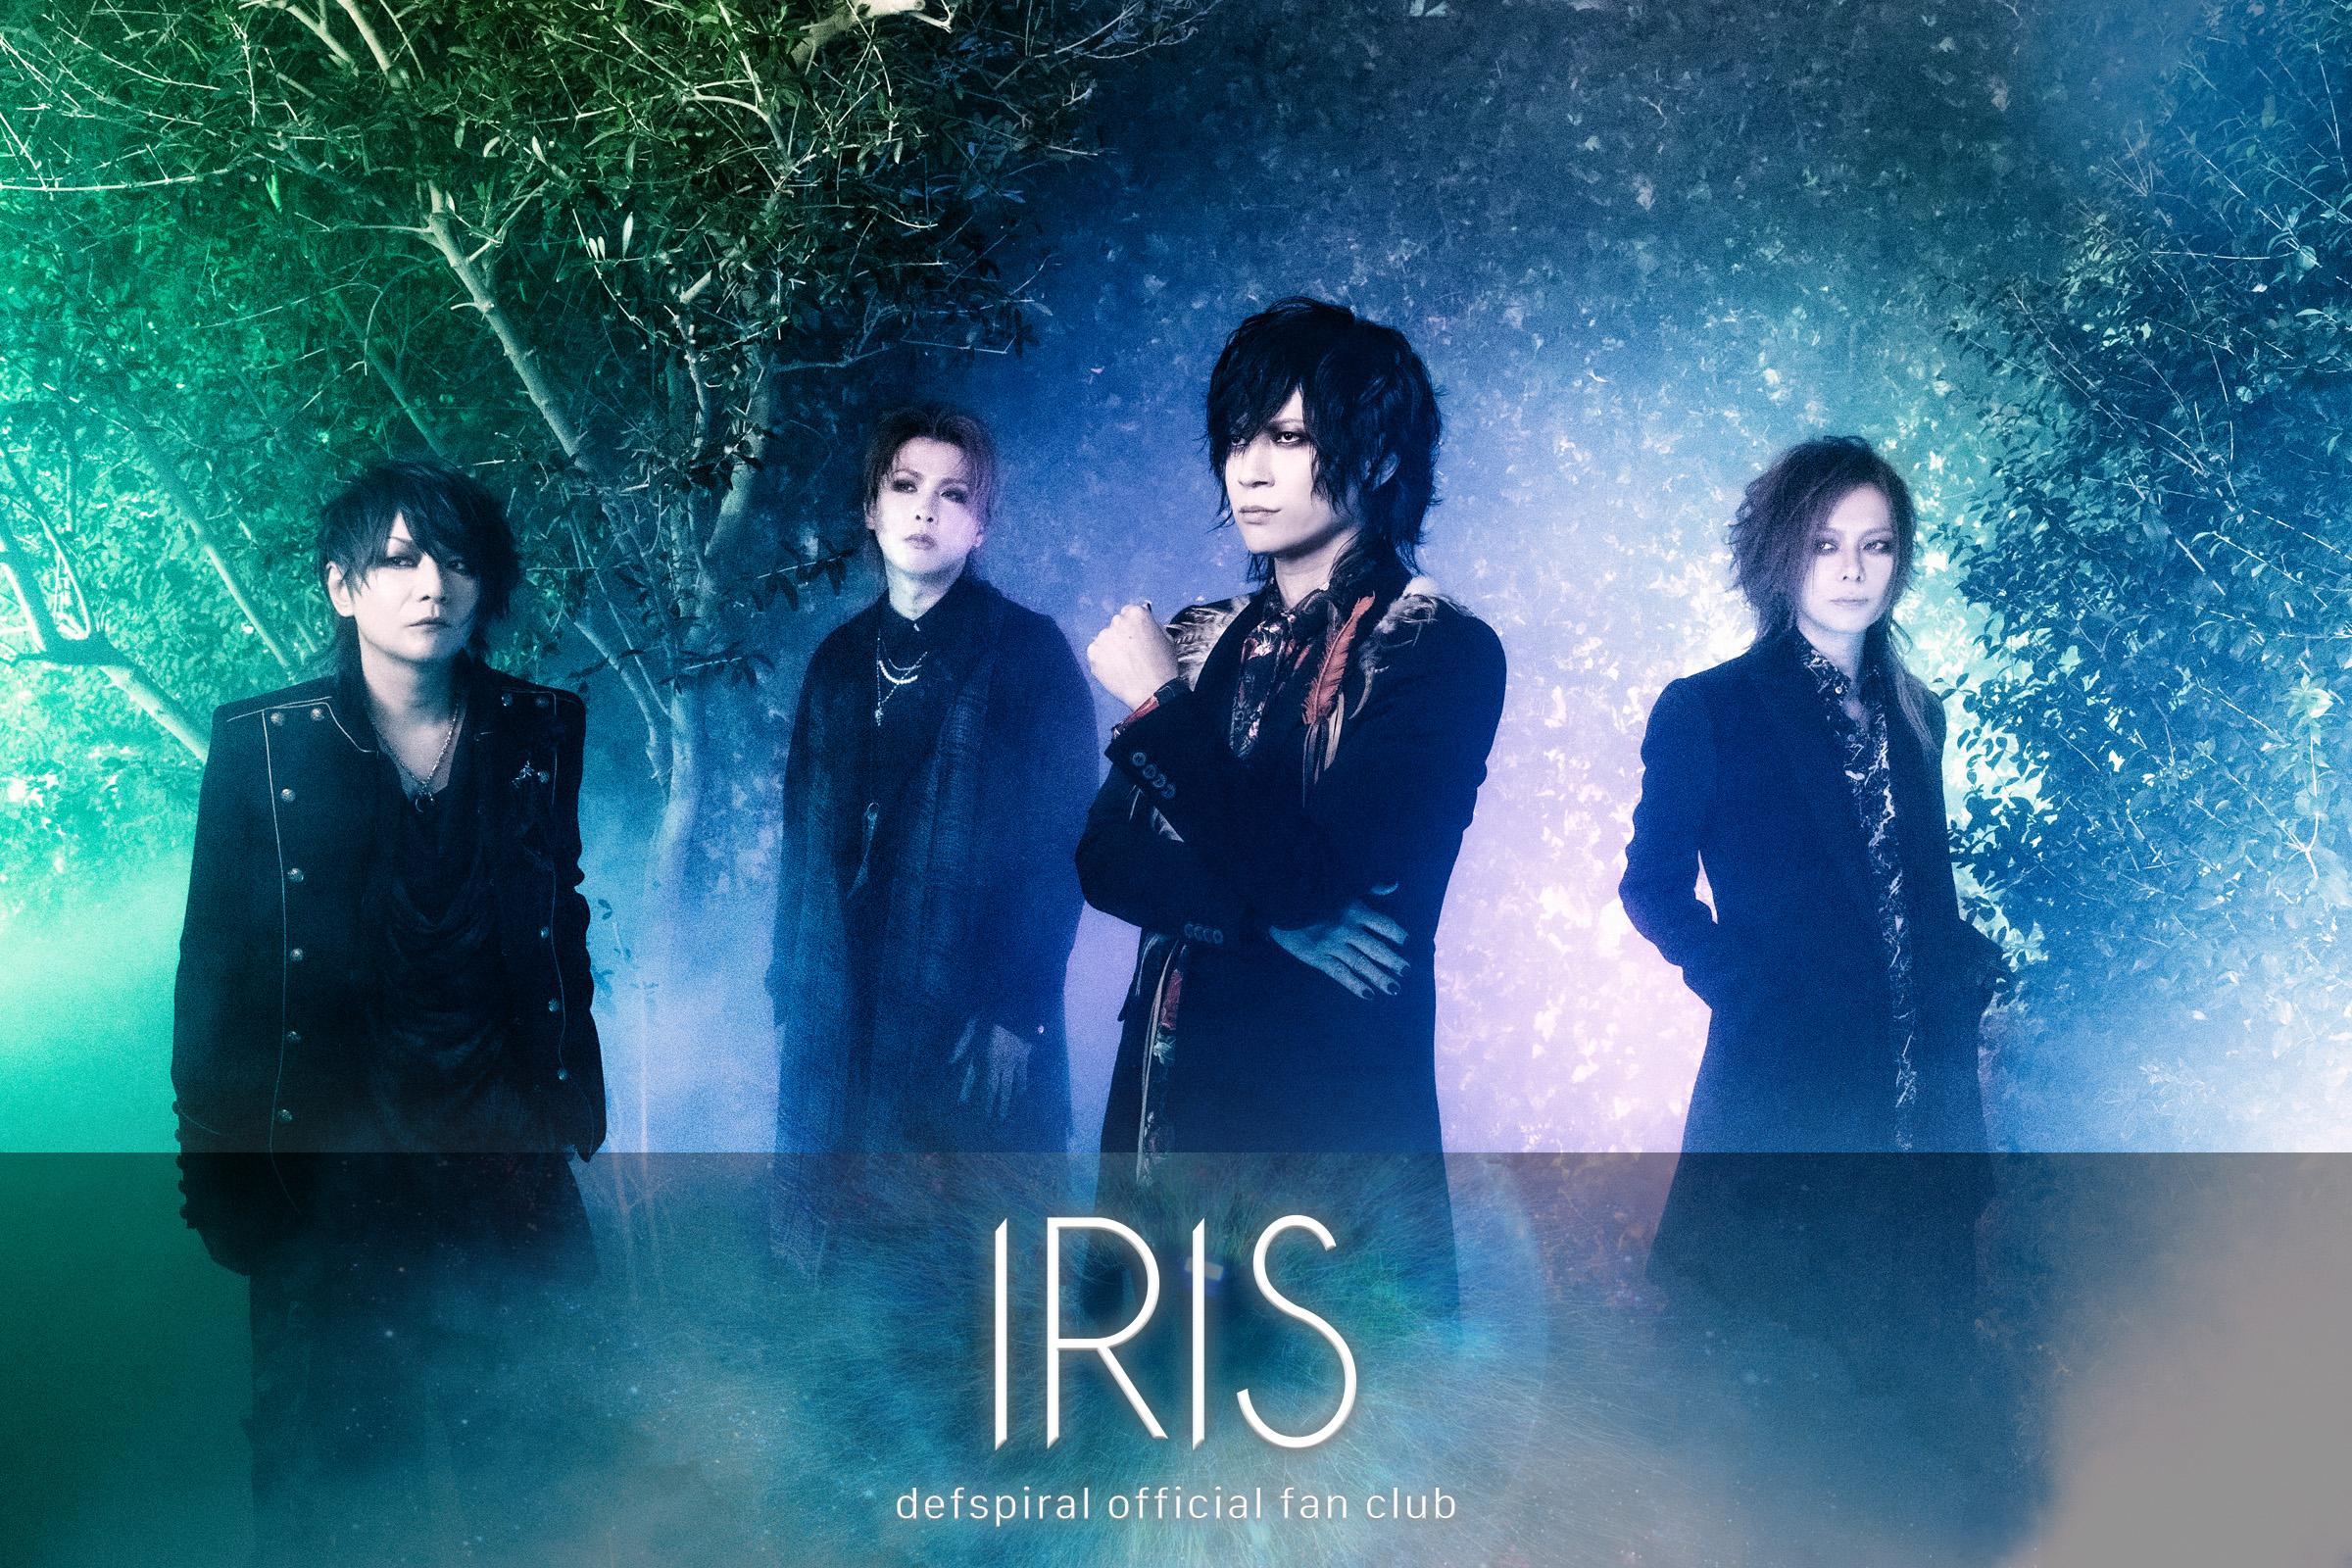 defspiral│defspiral official fan club "IRIS"